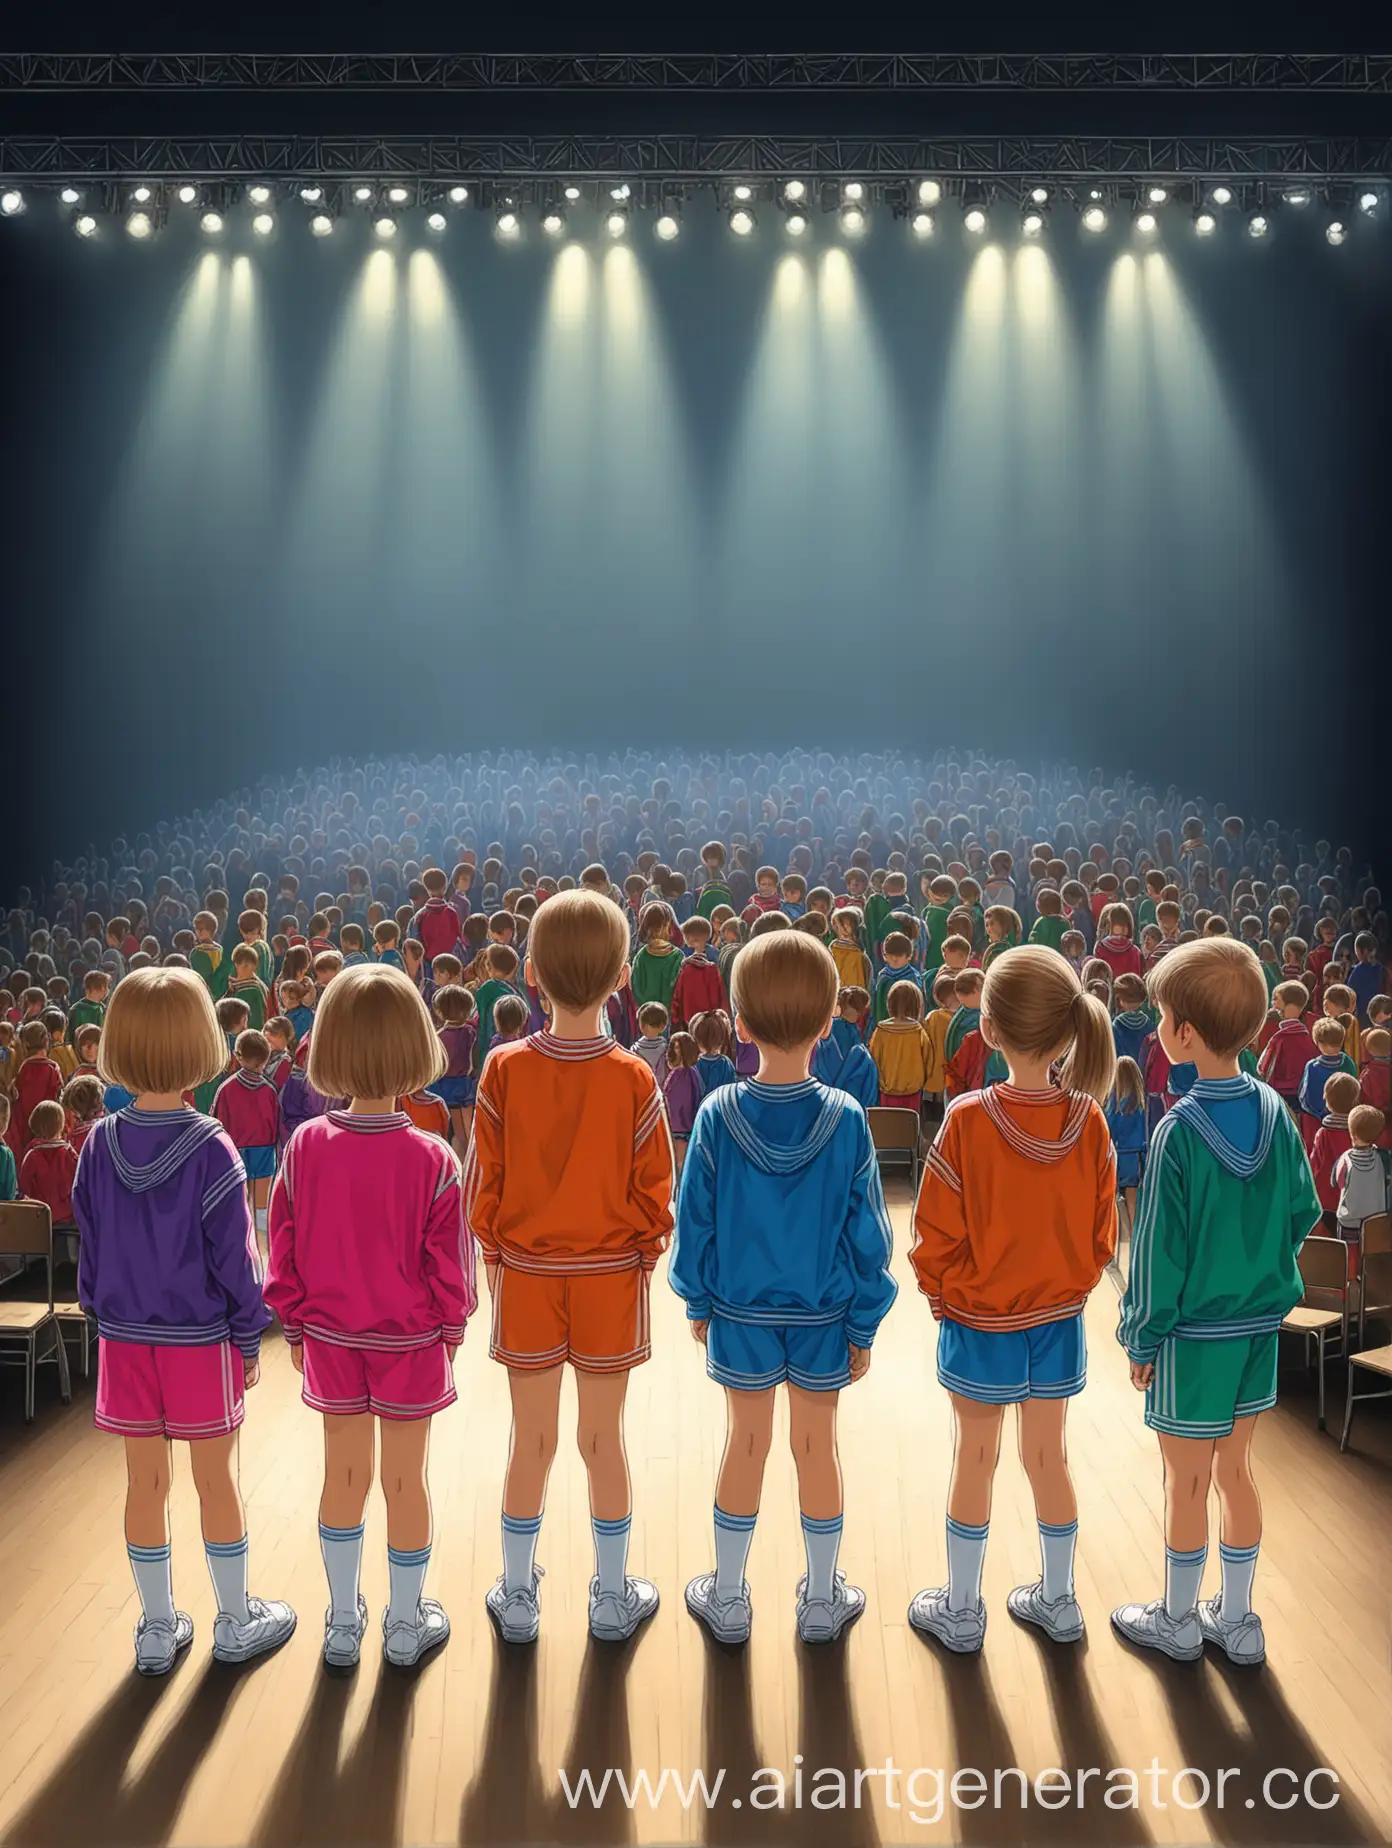 Рисунок, 4 ребенка смотрят на сцену из-за кулис перед выступлением, дети стоят спиной к нам, видно зал, видно сцену и софиты, дети одеты в спортивные костюмы 90-х годов, дети от 8 до 15 лет